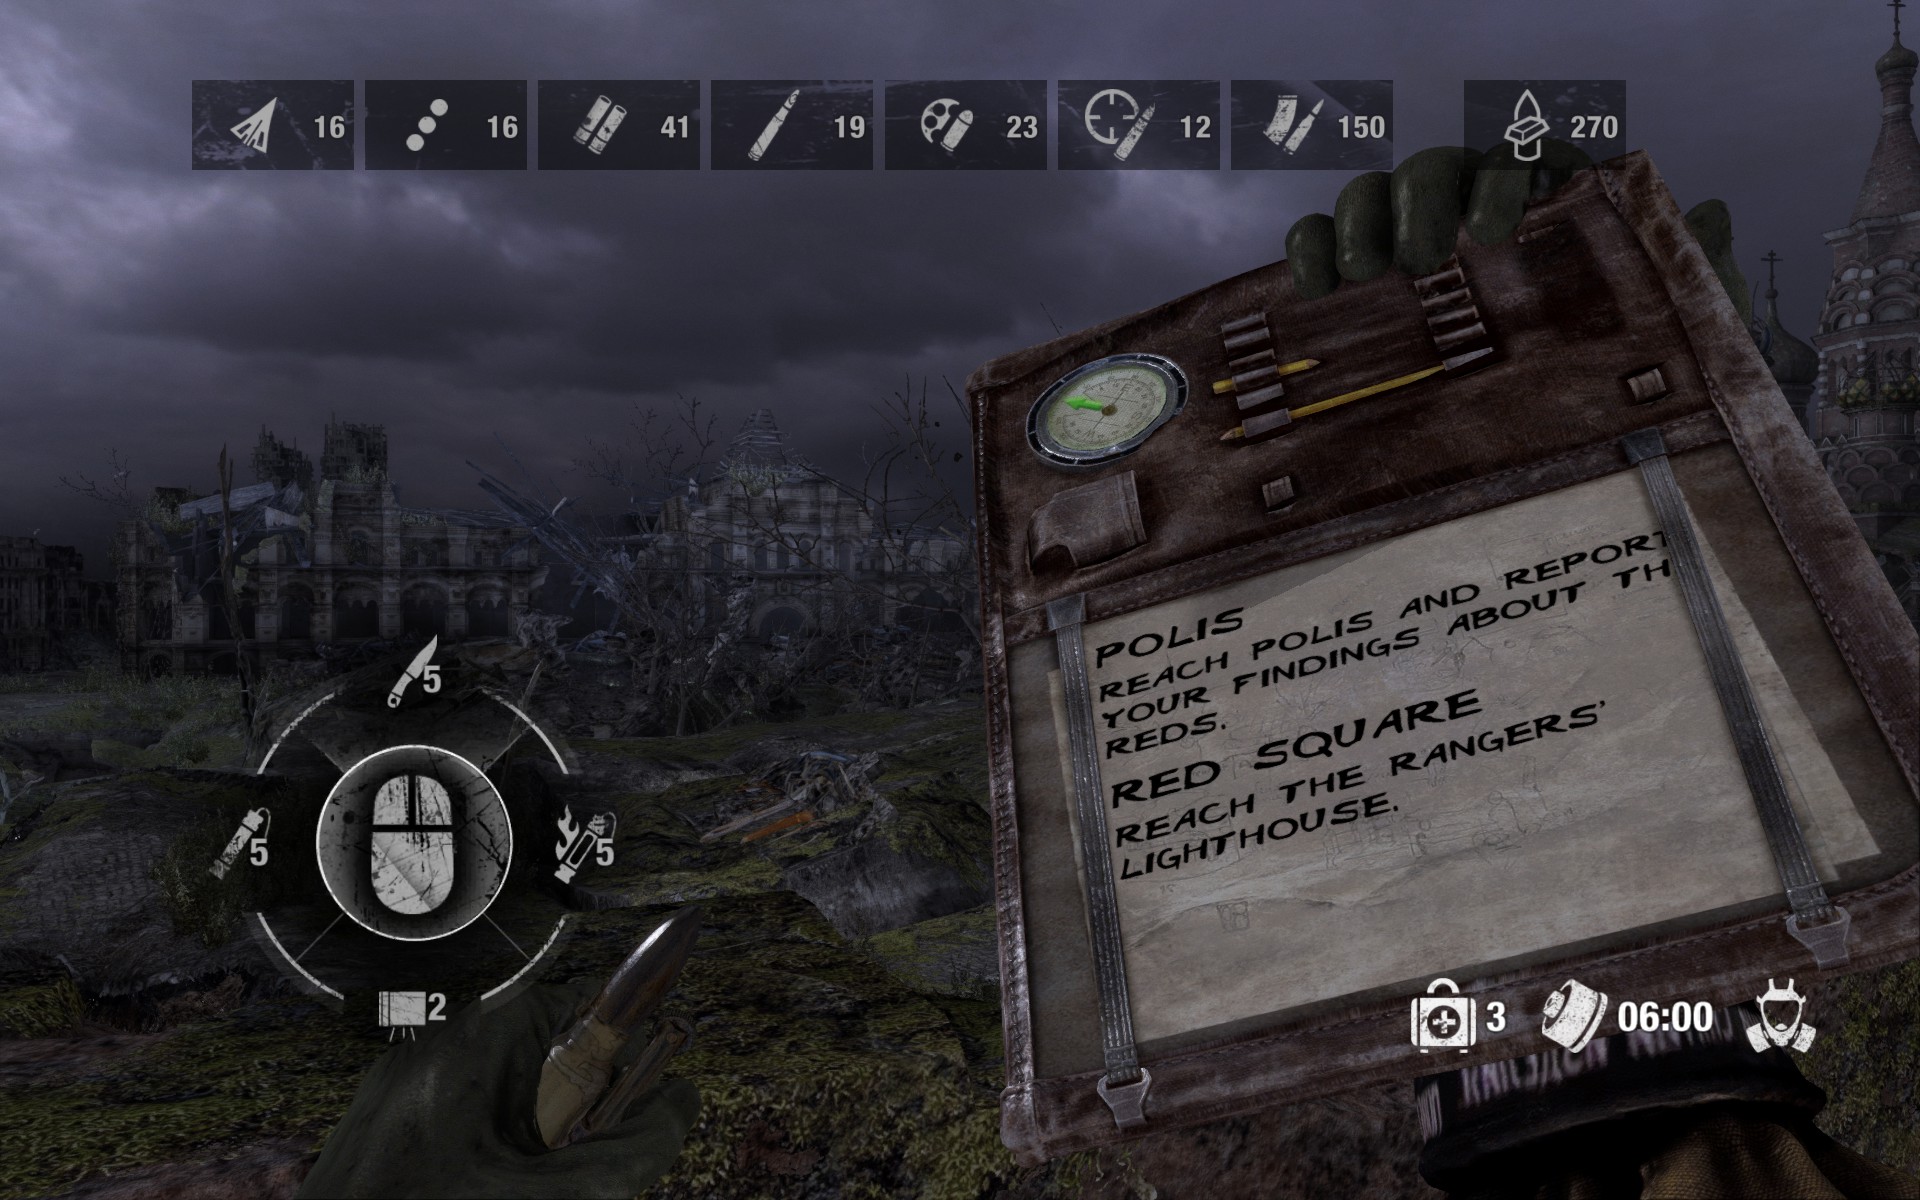 地铁2033 任务菜单 - 依靠 写字板+指南针 呈现任务目标和地点     左侧的4向的投掷物选择轮盘是在主机游戏中非常常见的UI设计